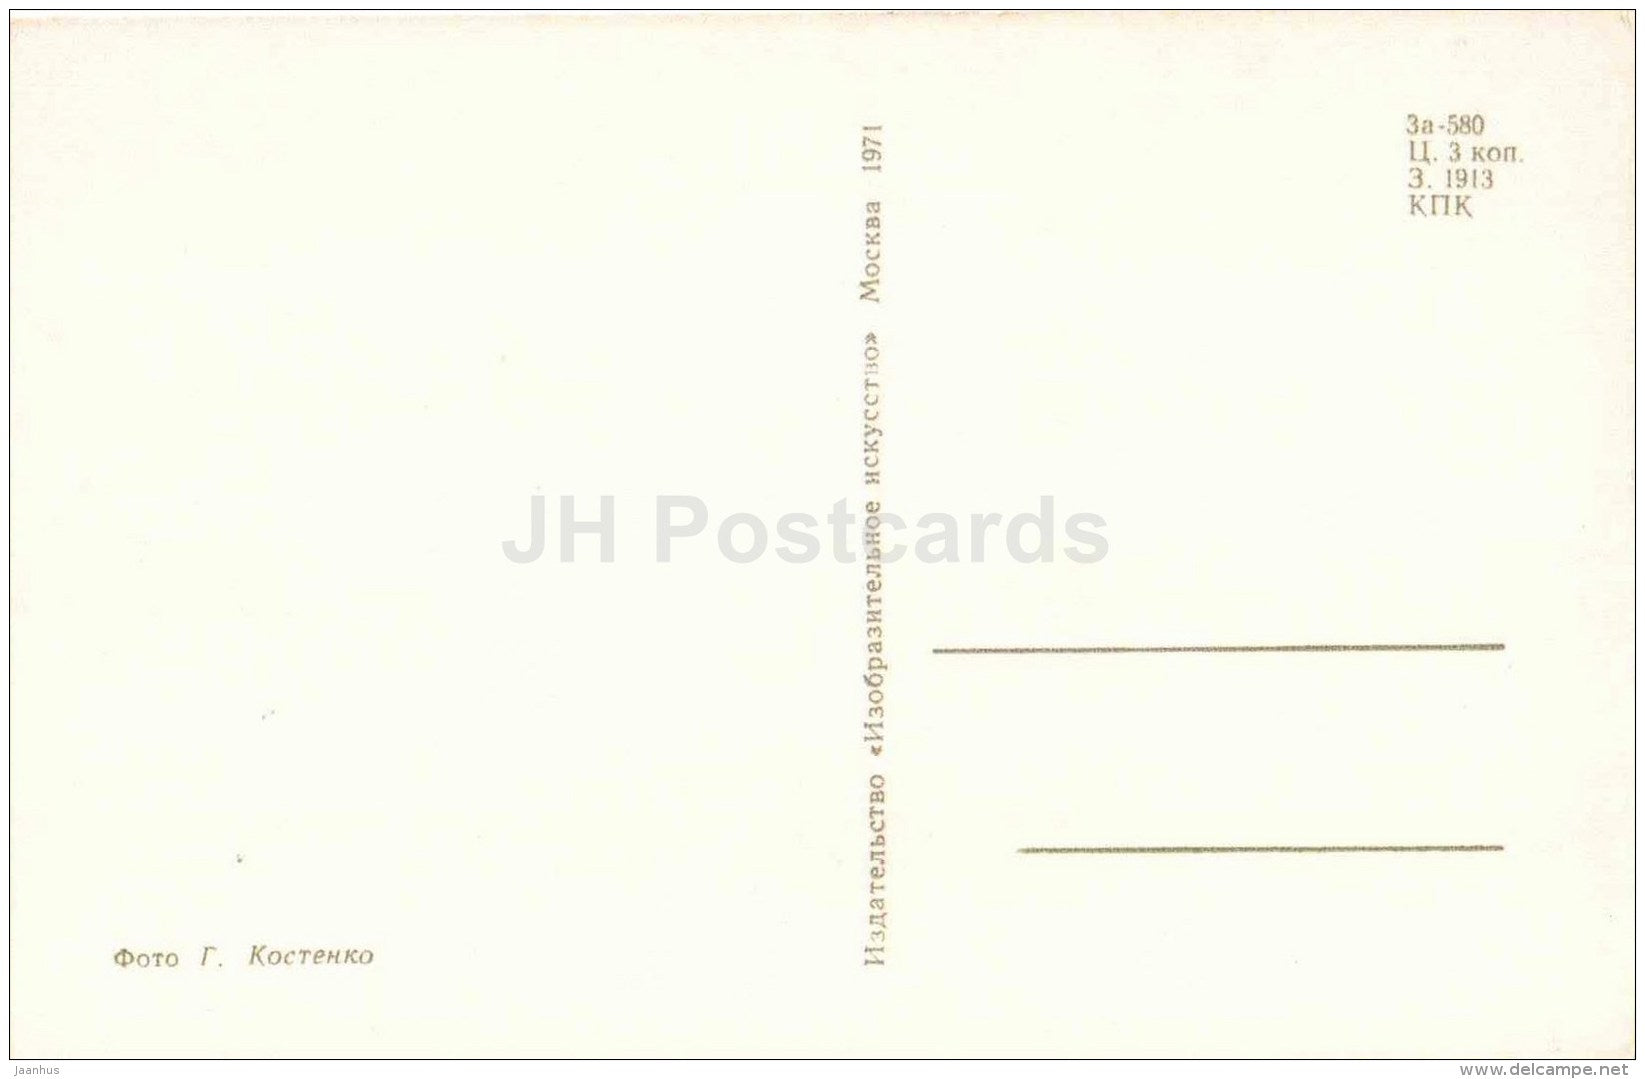 dahlia - vase - flowers - 1971 - Russia USSR - unused - JH Postcards